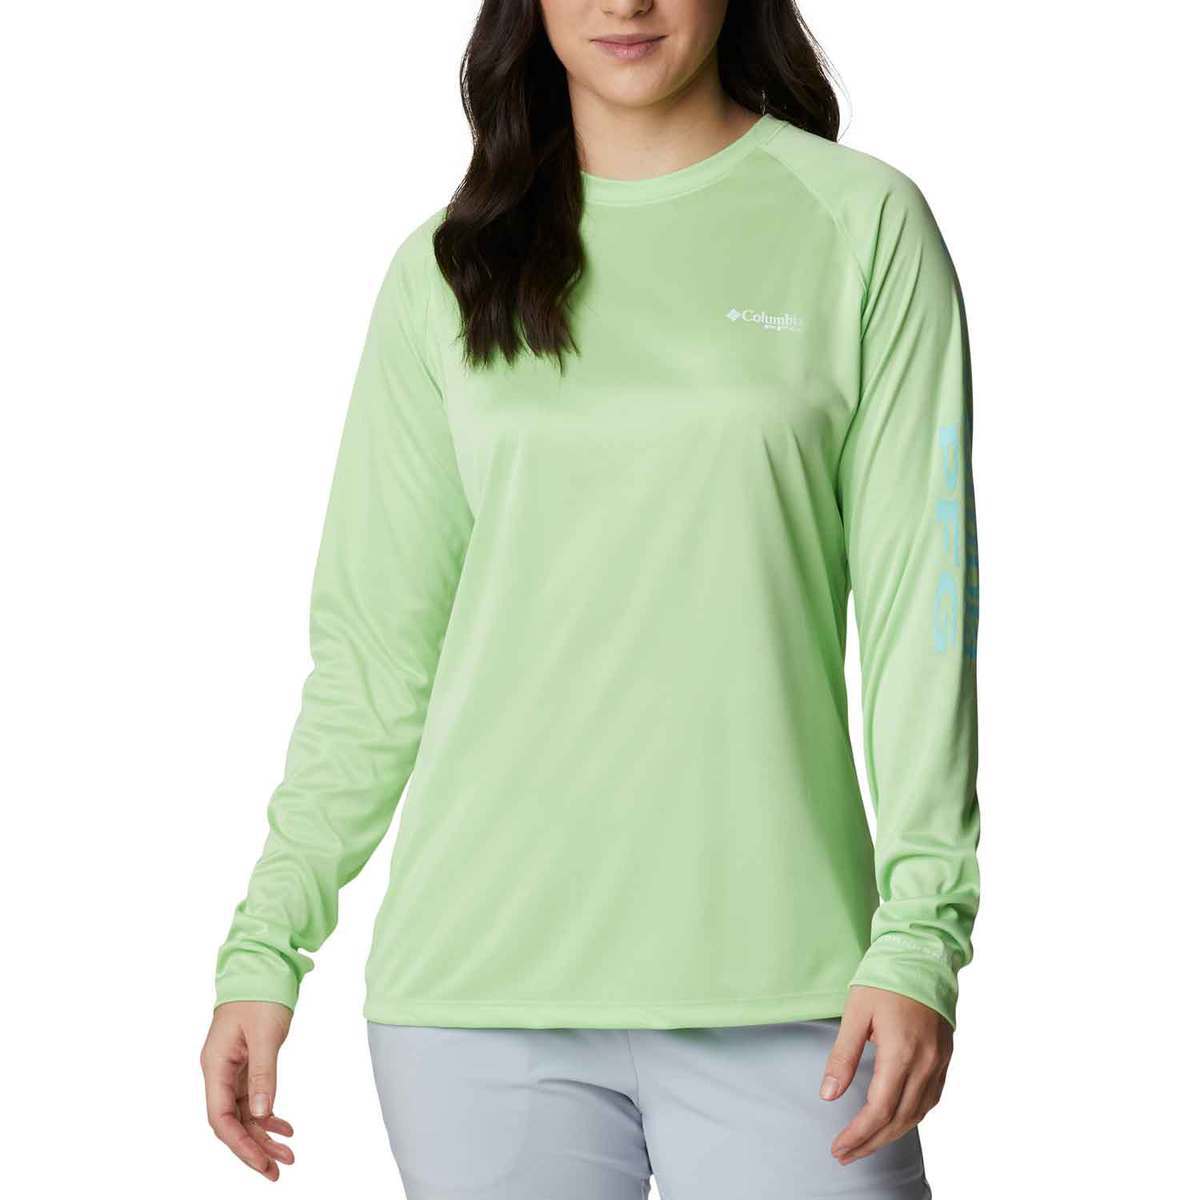 https://www.sportsmans.com/medias/columbia-womens-tidal-tee-heather-long-sleeve-shirt-lime-glow-heather-s-1658849-1.jpg?context=bWFzdGVyfGltYWdlc3w1MDY5NXxpbWFnZS9qcGVnfGFXMWhaMlZ6TDJnMU15OW9ORGN2T1Rnek9UQTROek15TVRFeE9DNXFjR2N8YjFjNTVhOWEyZTIxMzhkMzZmZDU4NDk5Y2FmNTUwNmNjMTcwYTJiYTI5MTlhMzFhMjVlNDJmOTc4ZjE0Y2IyYg